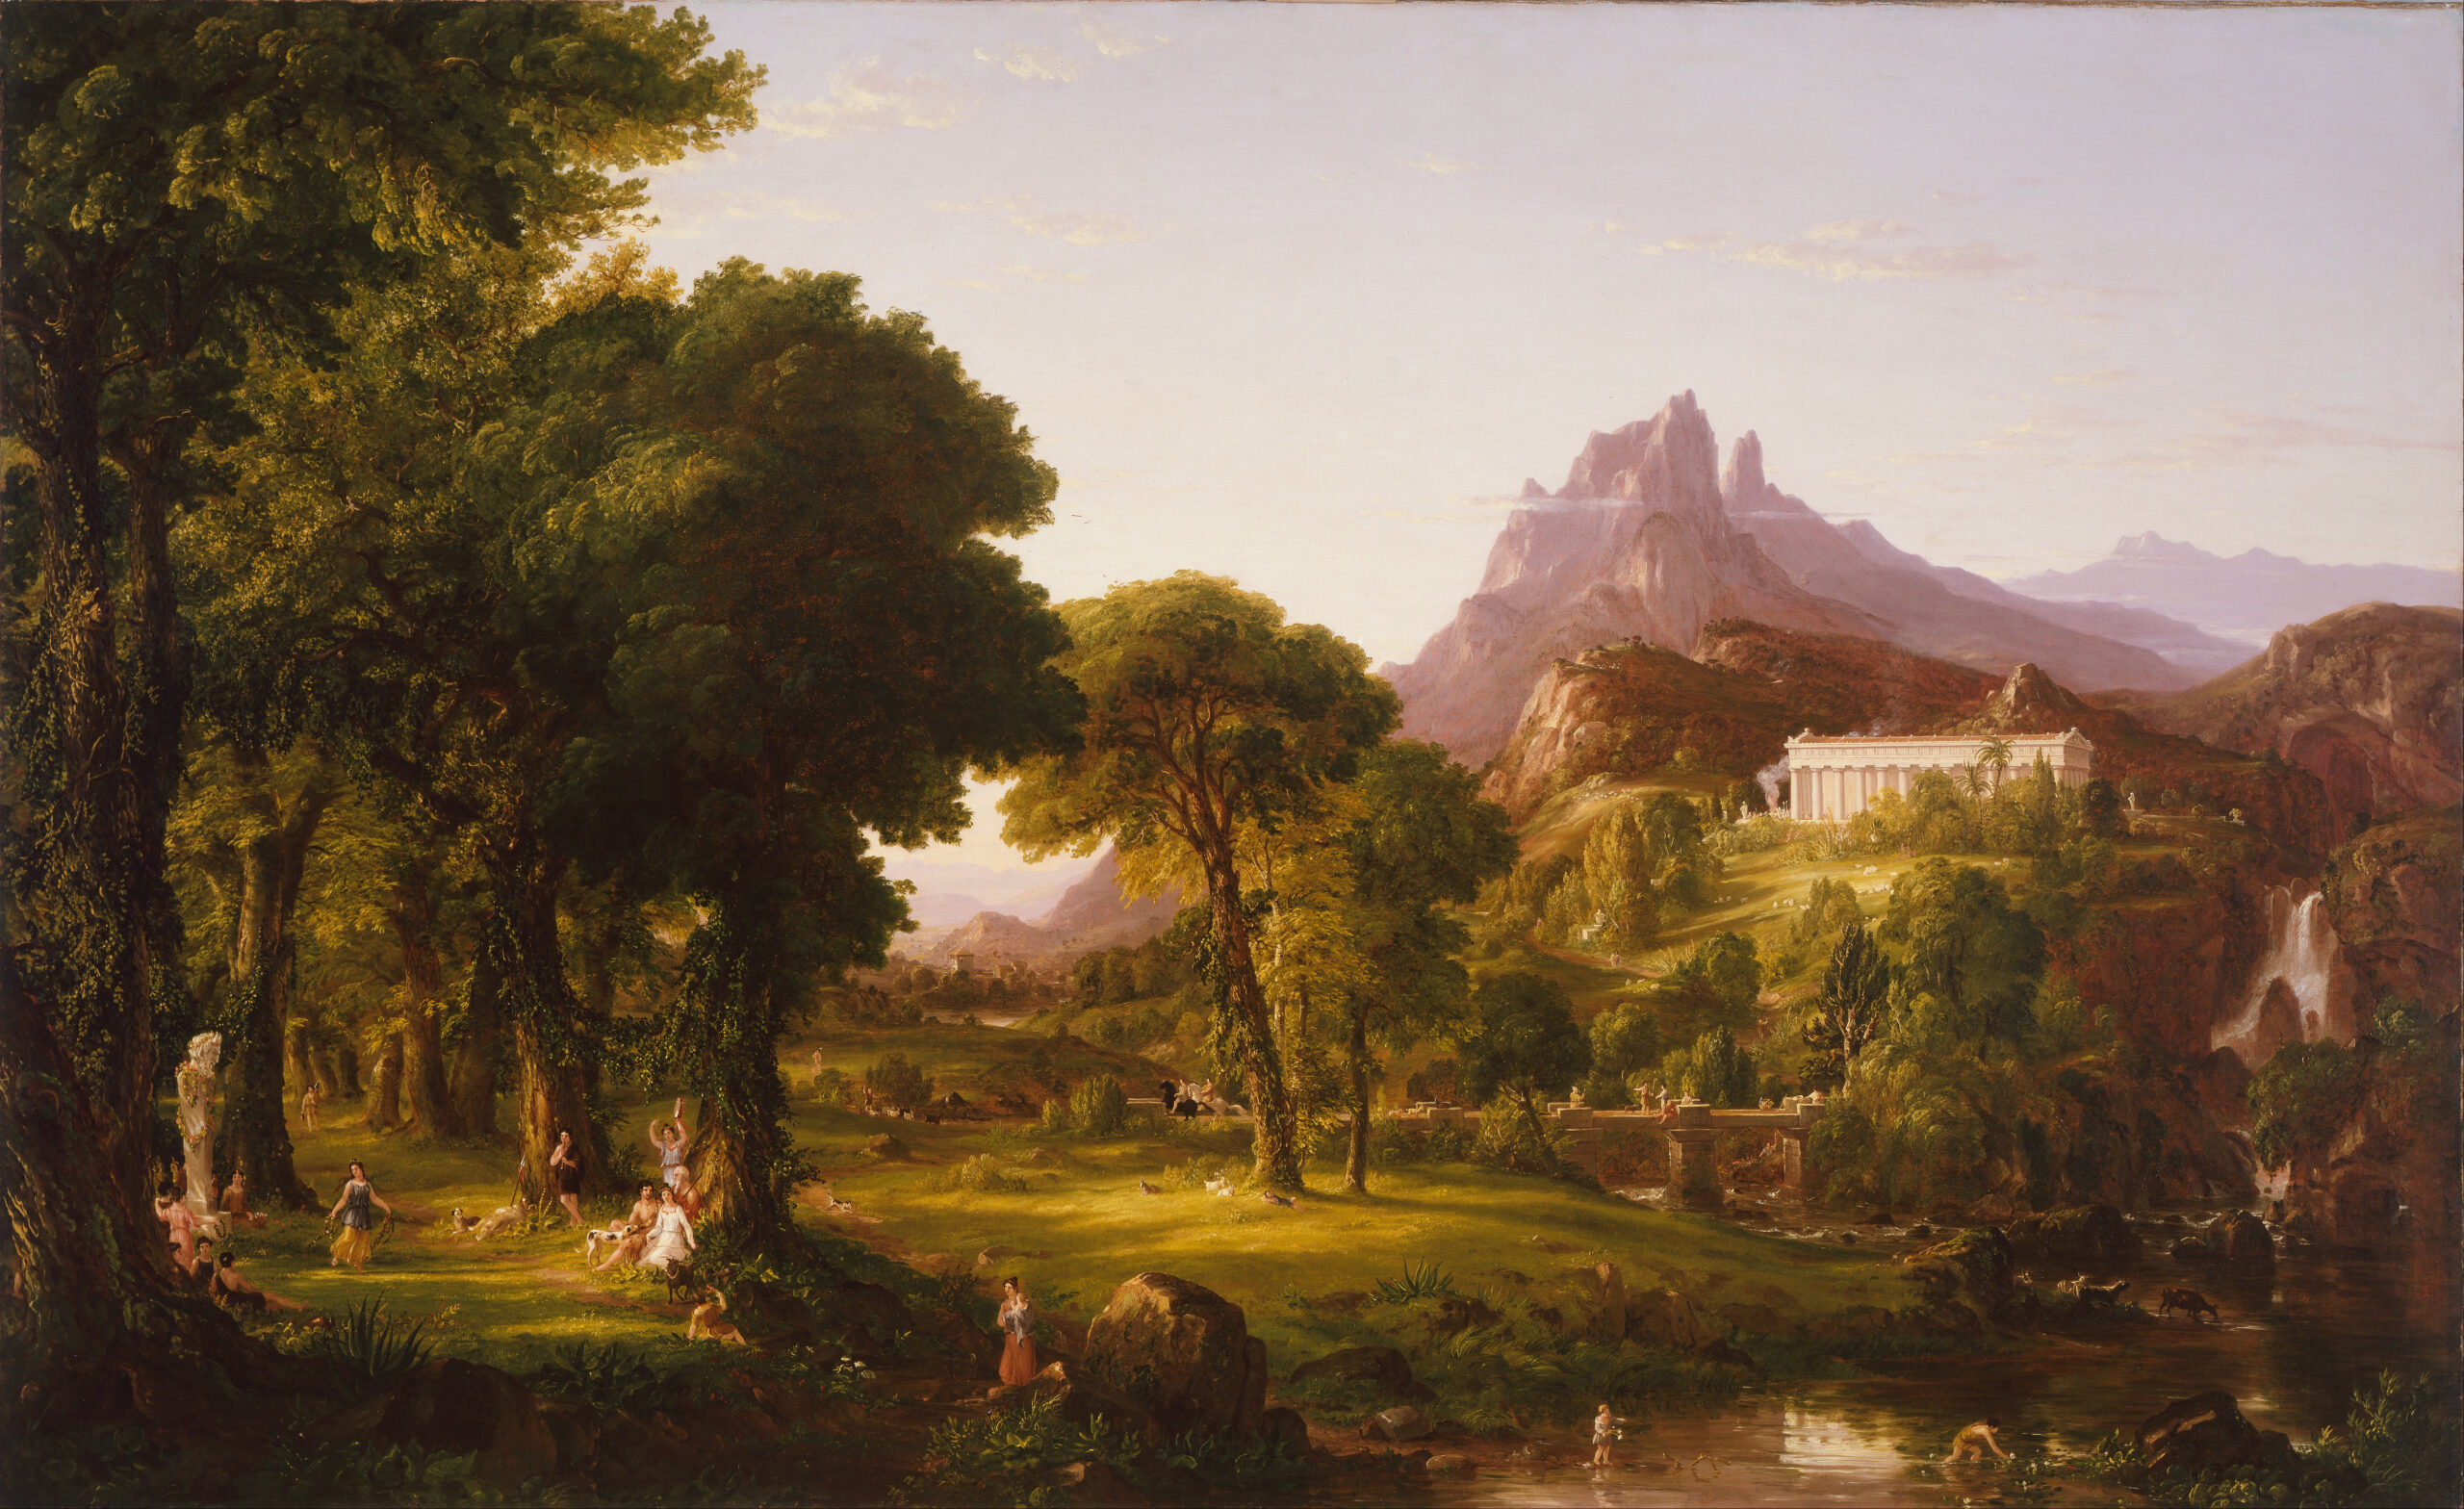 Dettaglio del dipinto "Dream of Arcadia" di Thomas Cole